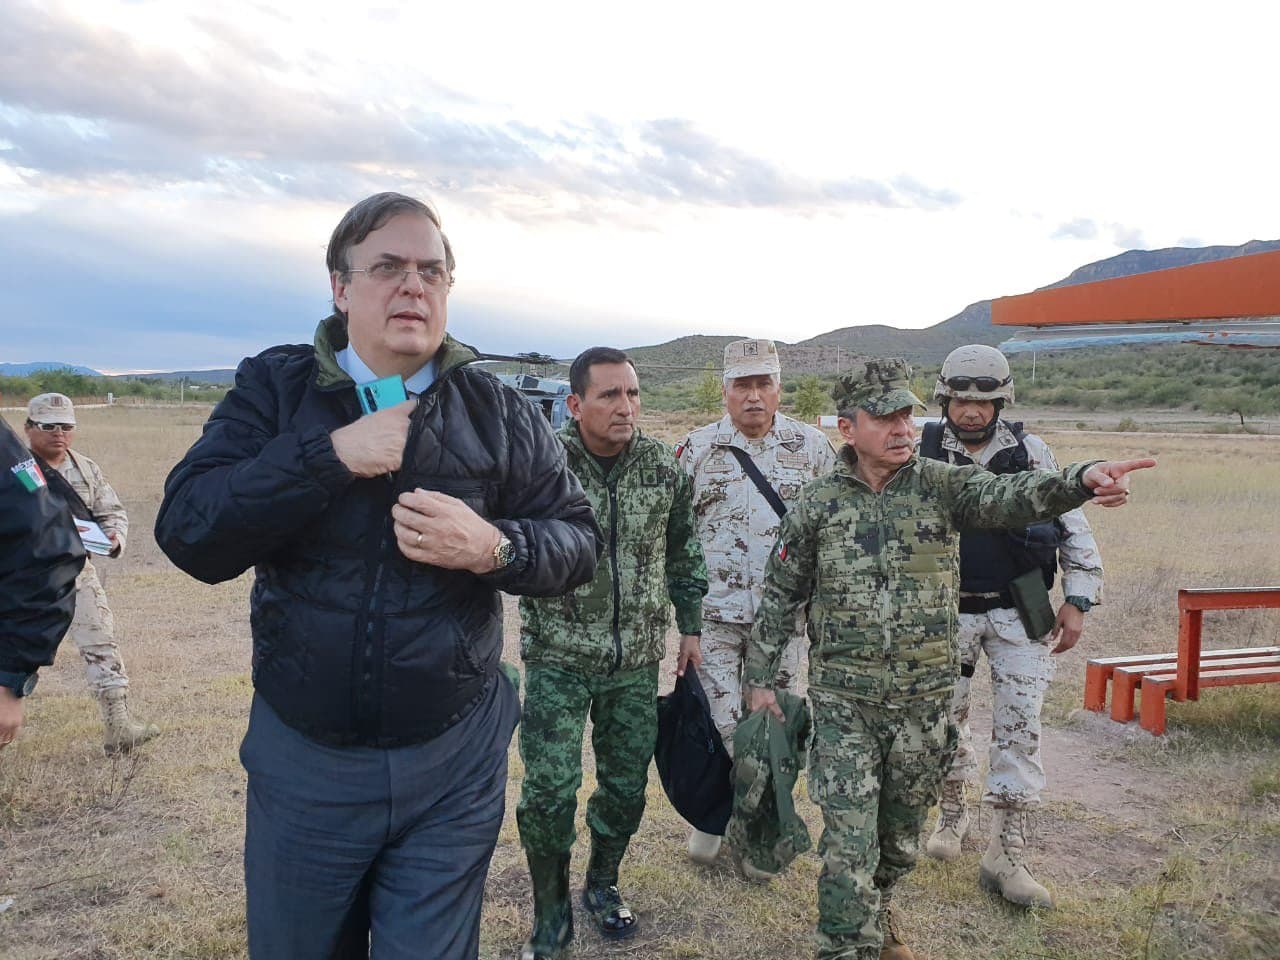 El canciller Marcelo Ebrard recorrió la zona del ataque a la familia LeBarón en Bavispe, Sonora. Foto: Presidencia de la República.